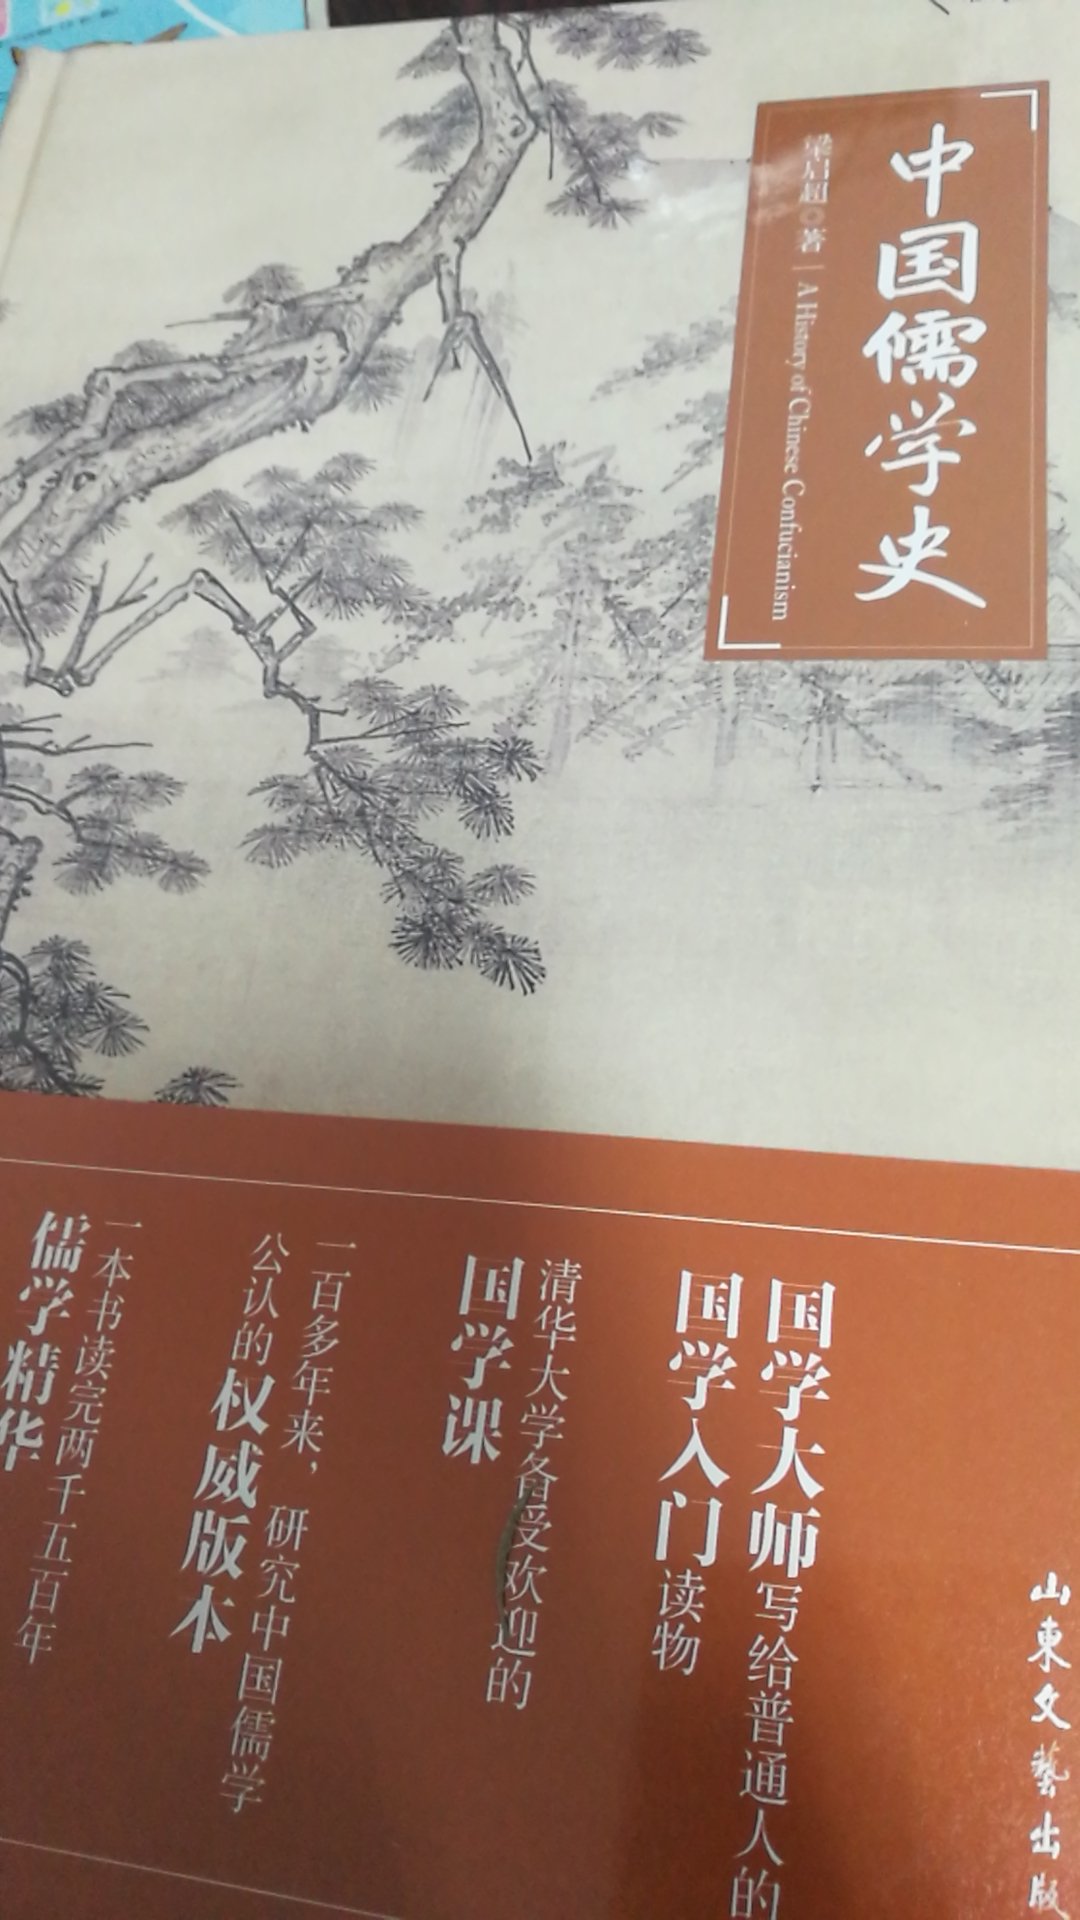 山东文艺出版社，第一次买这个出版社的书，质量还可以，装帧精美，只是儒学史一言难尽。